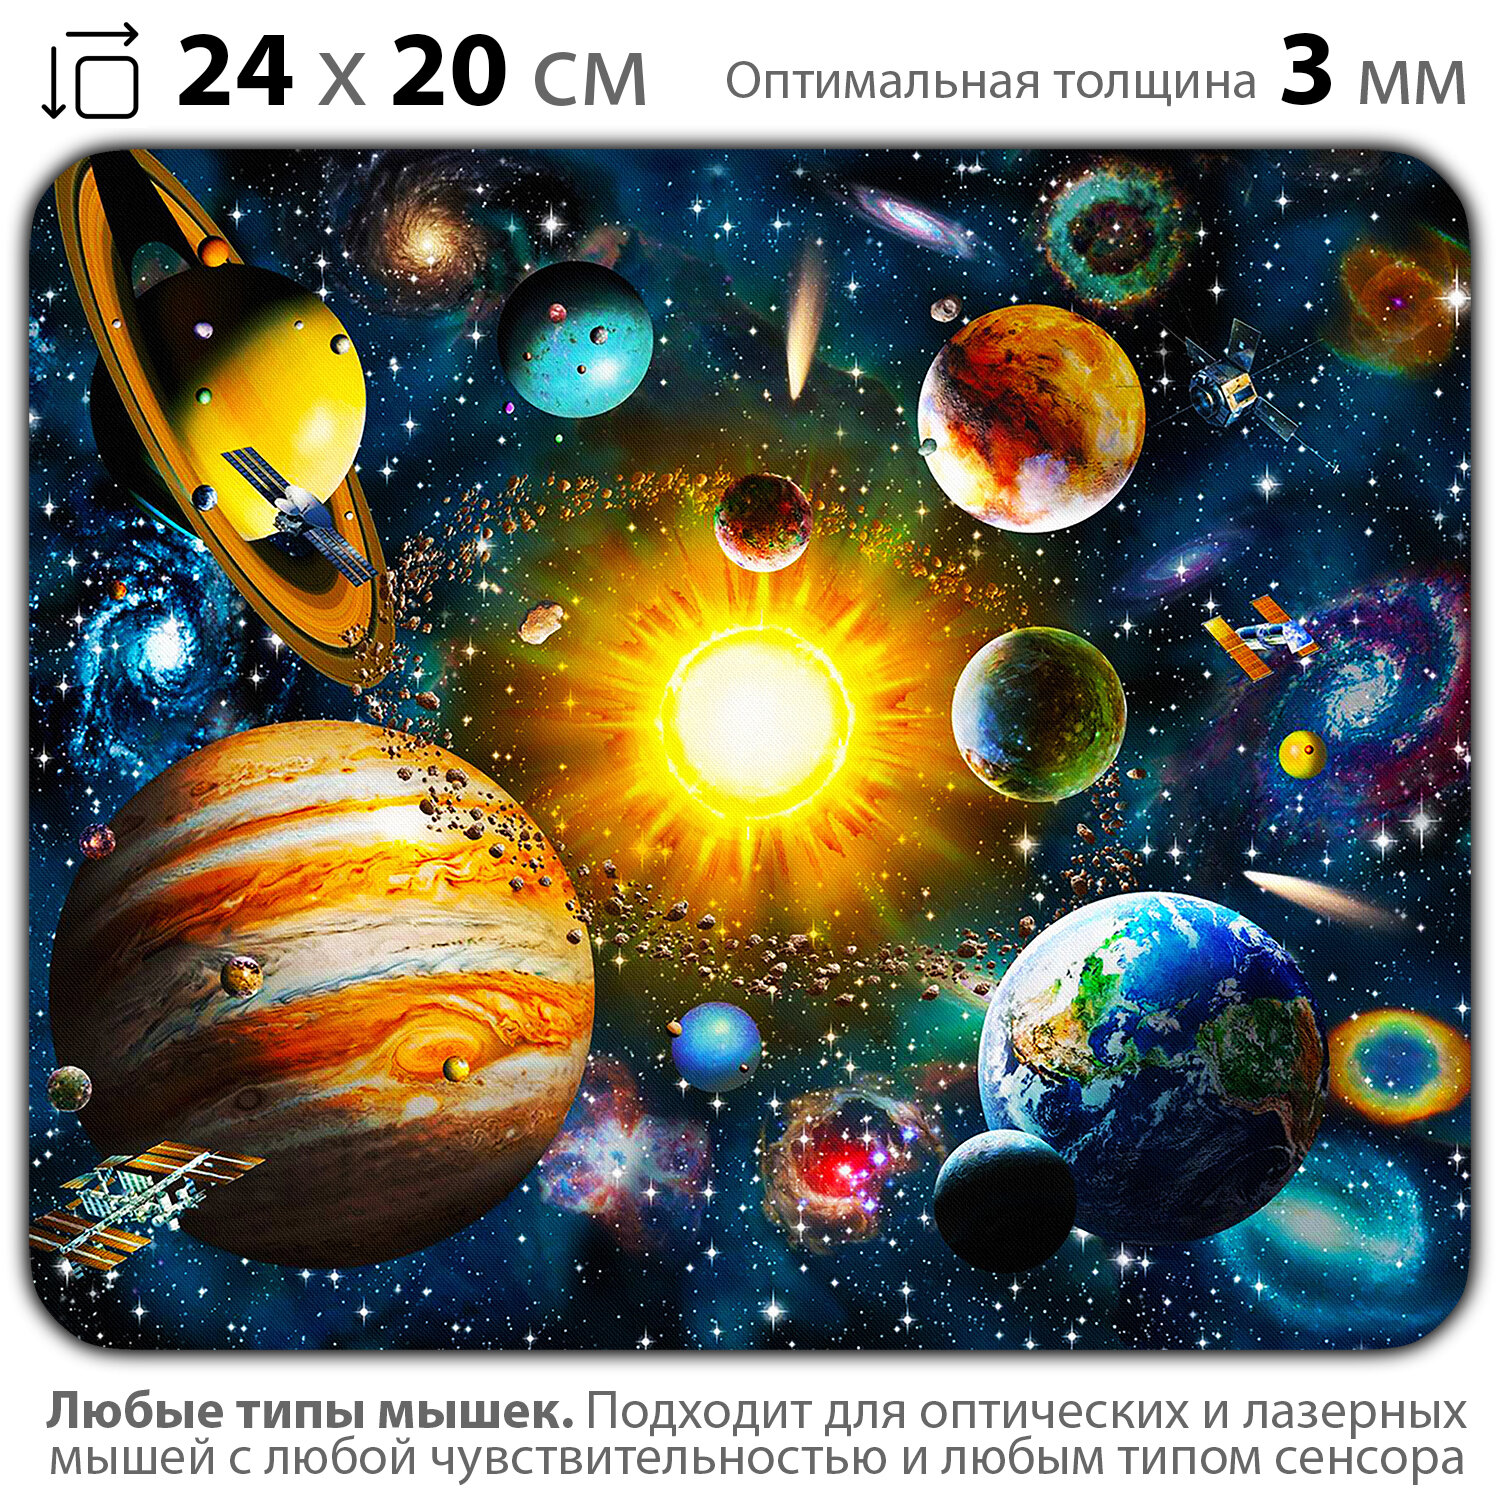 Коврик для мыши "Космос. Планеты солнечной системы" (24 x 20 см x 3 мм)